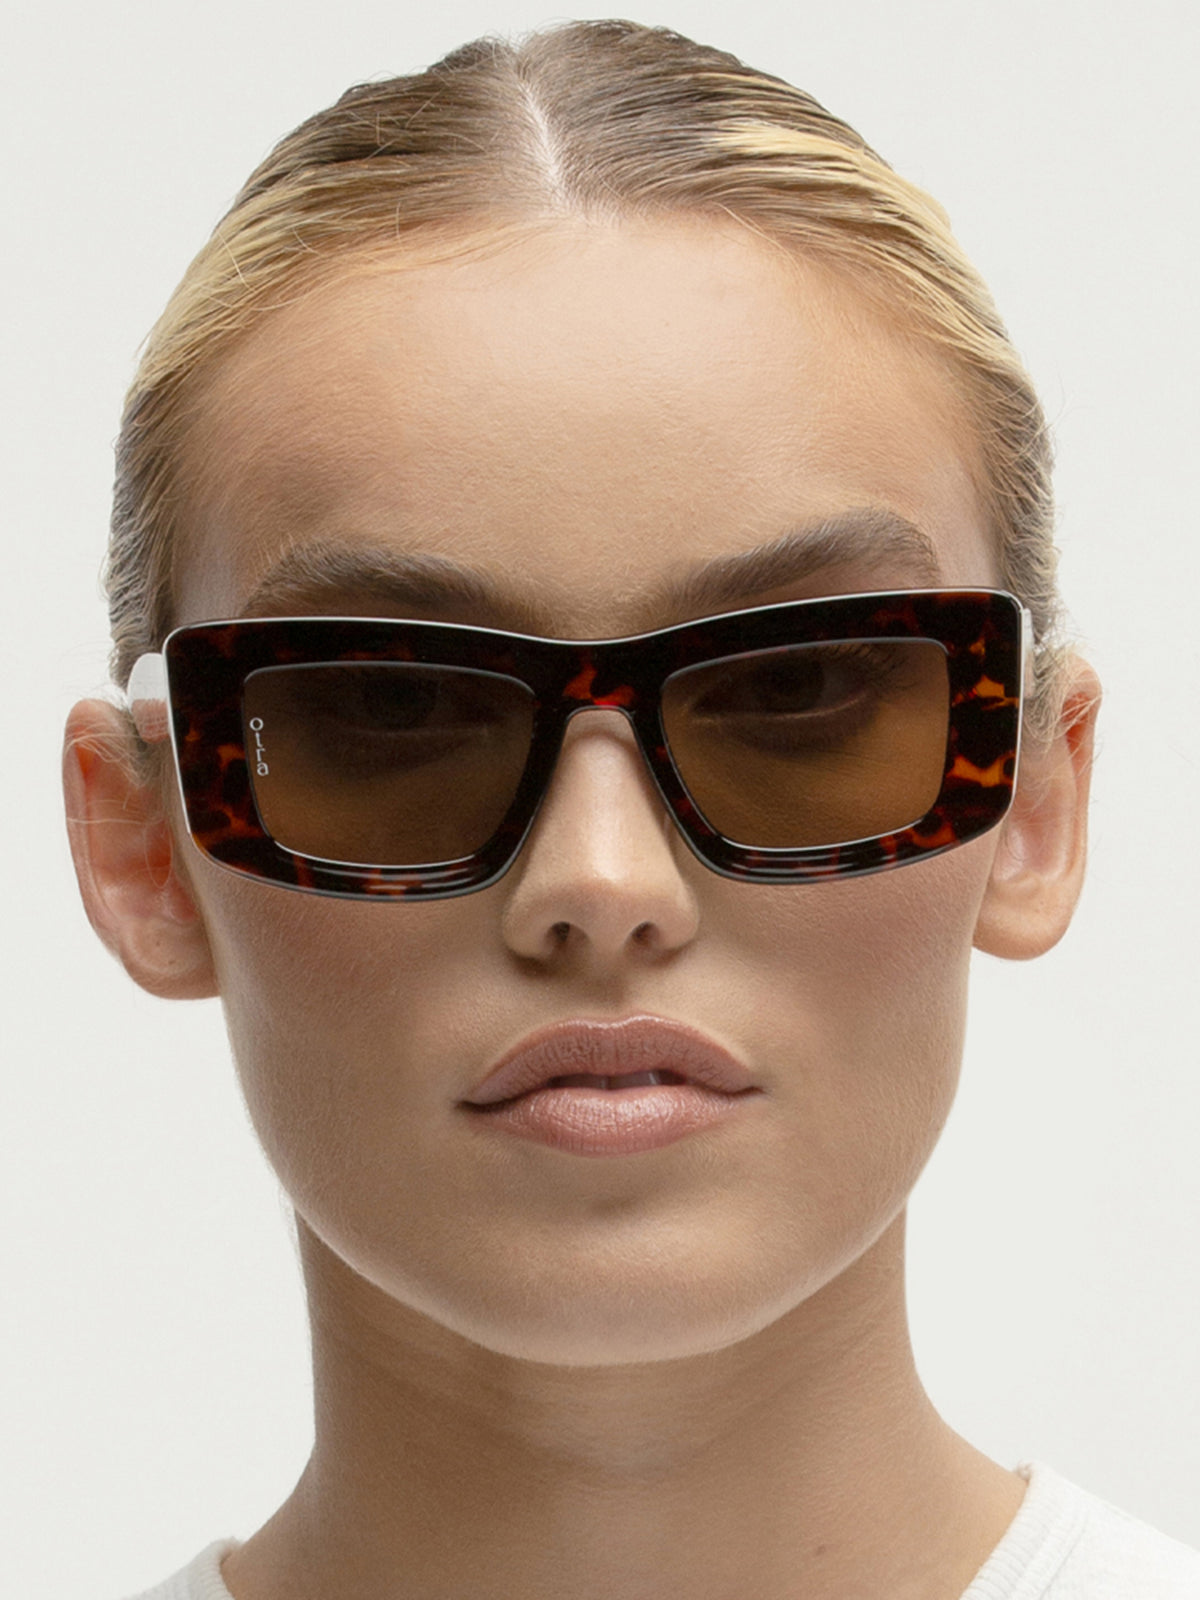 Marsha Sunglasses in Tortoiseshell &amp; Brown